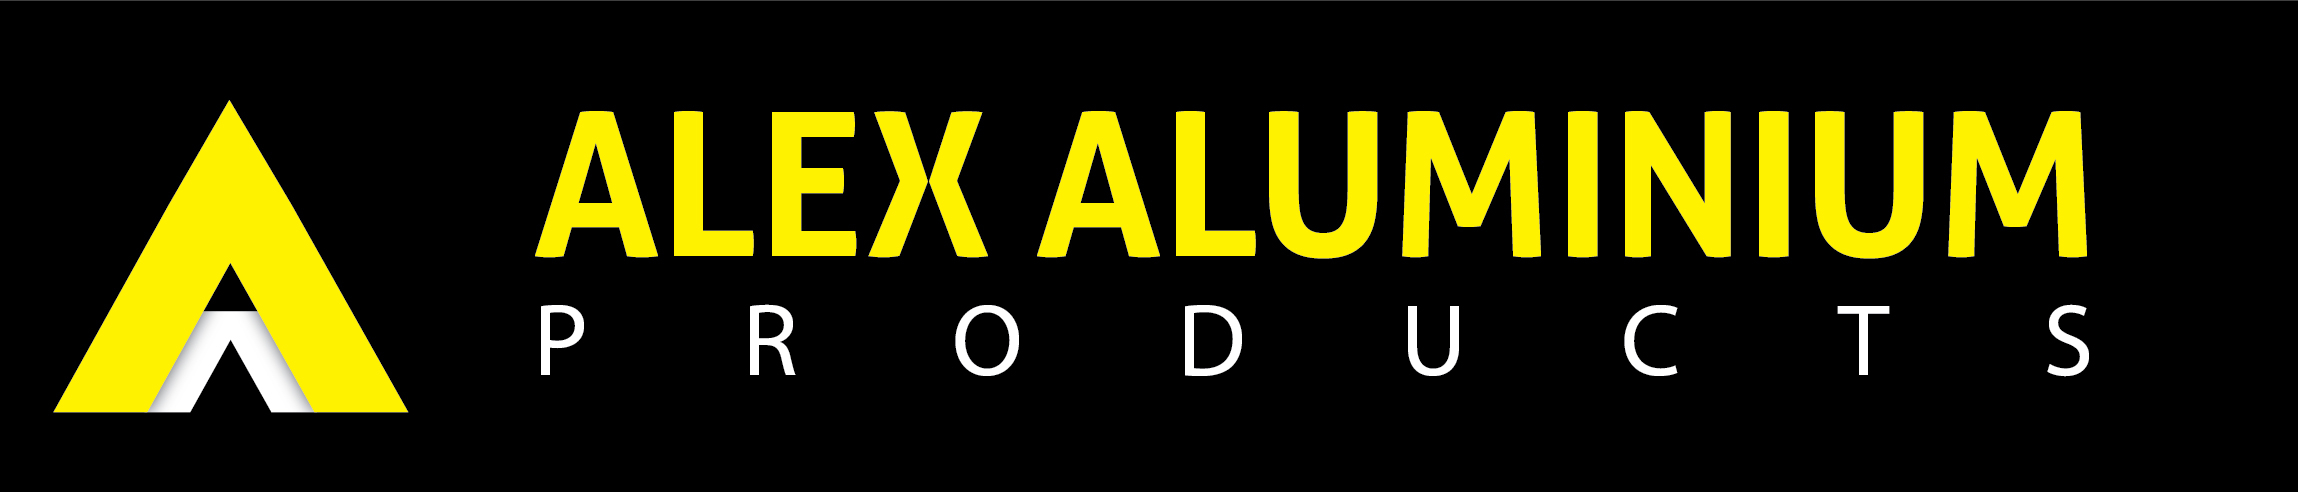 Alex Aluminium Products logo